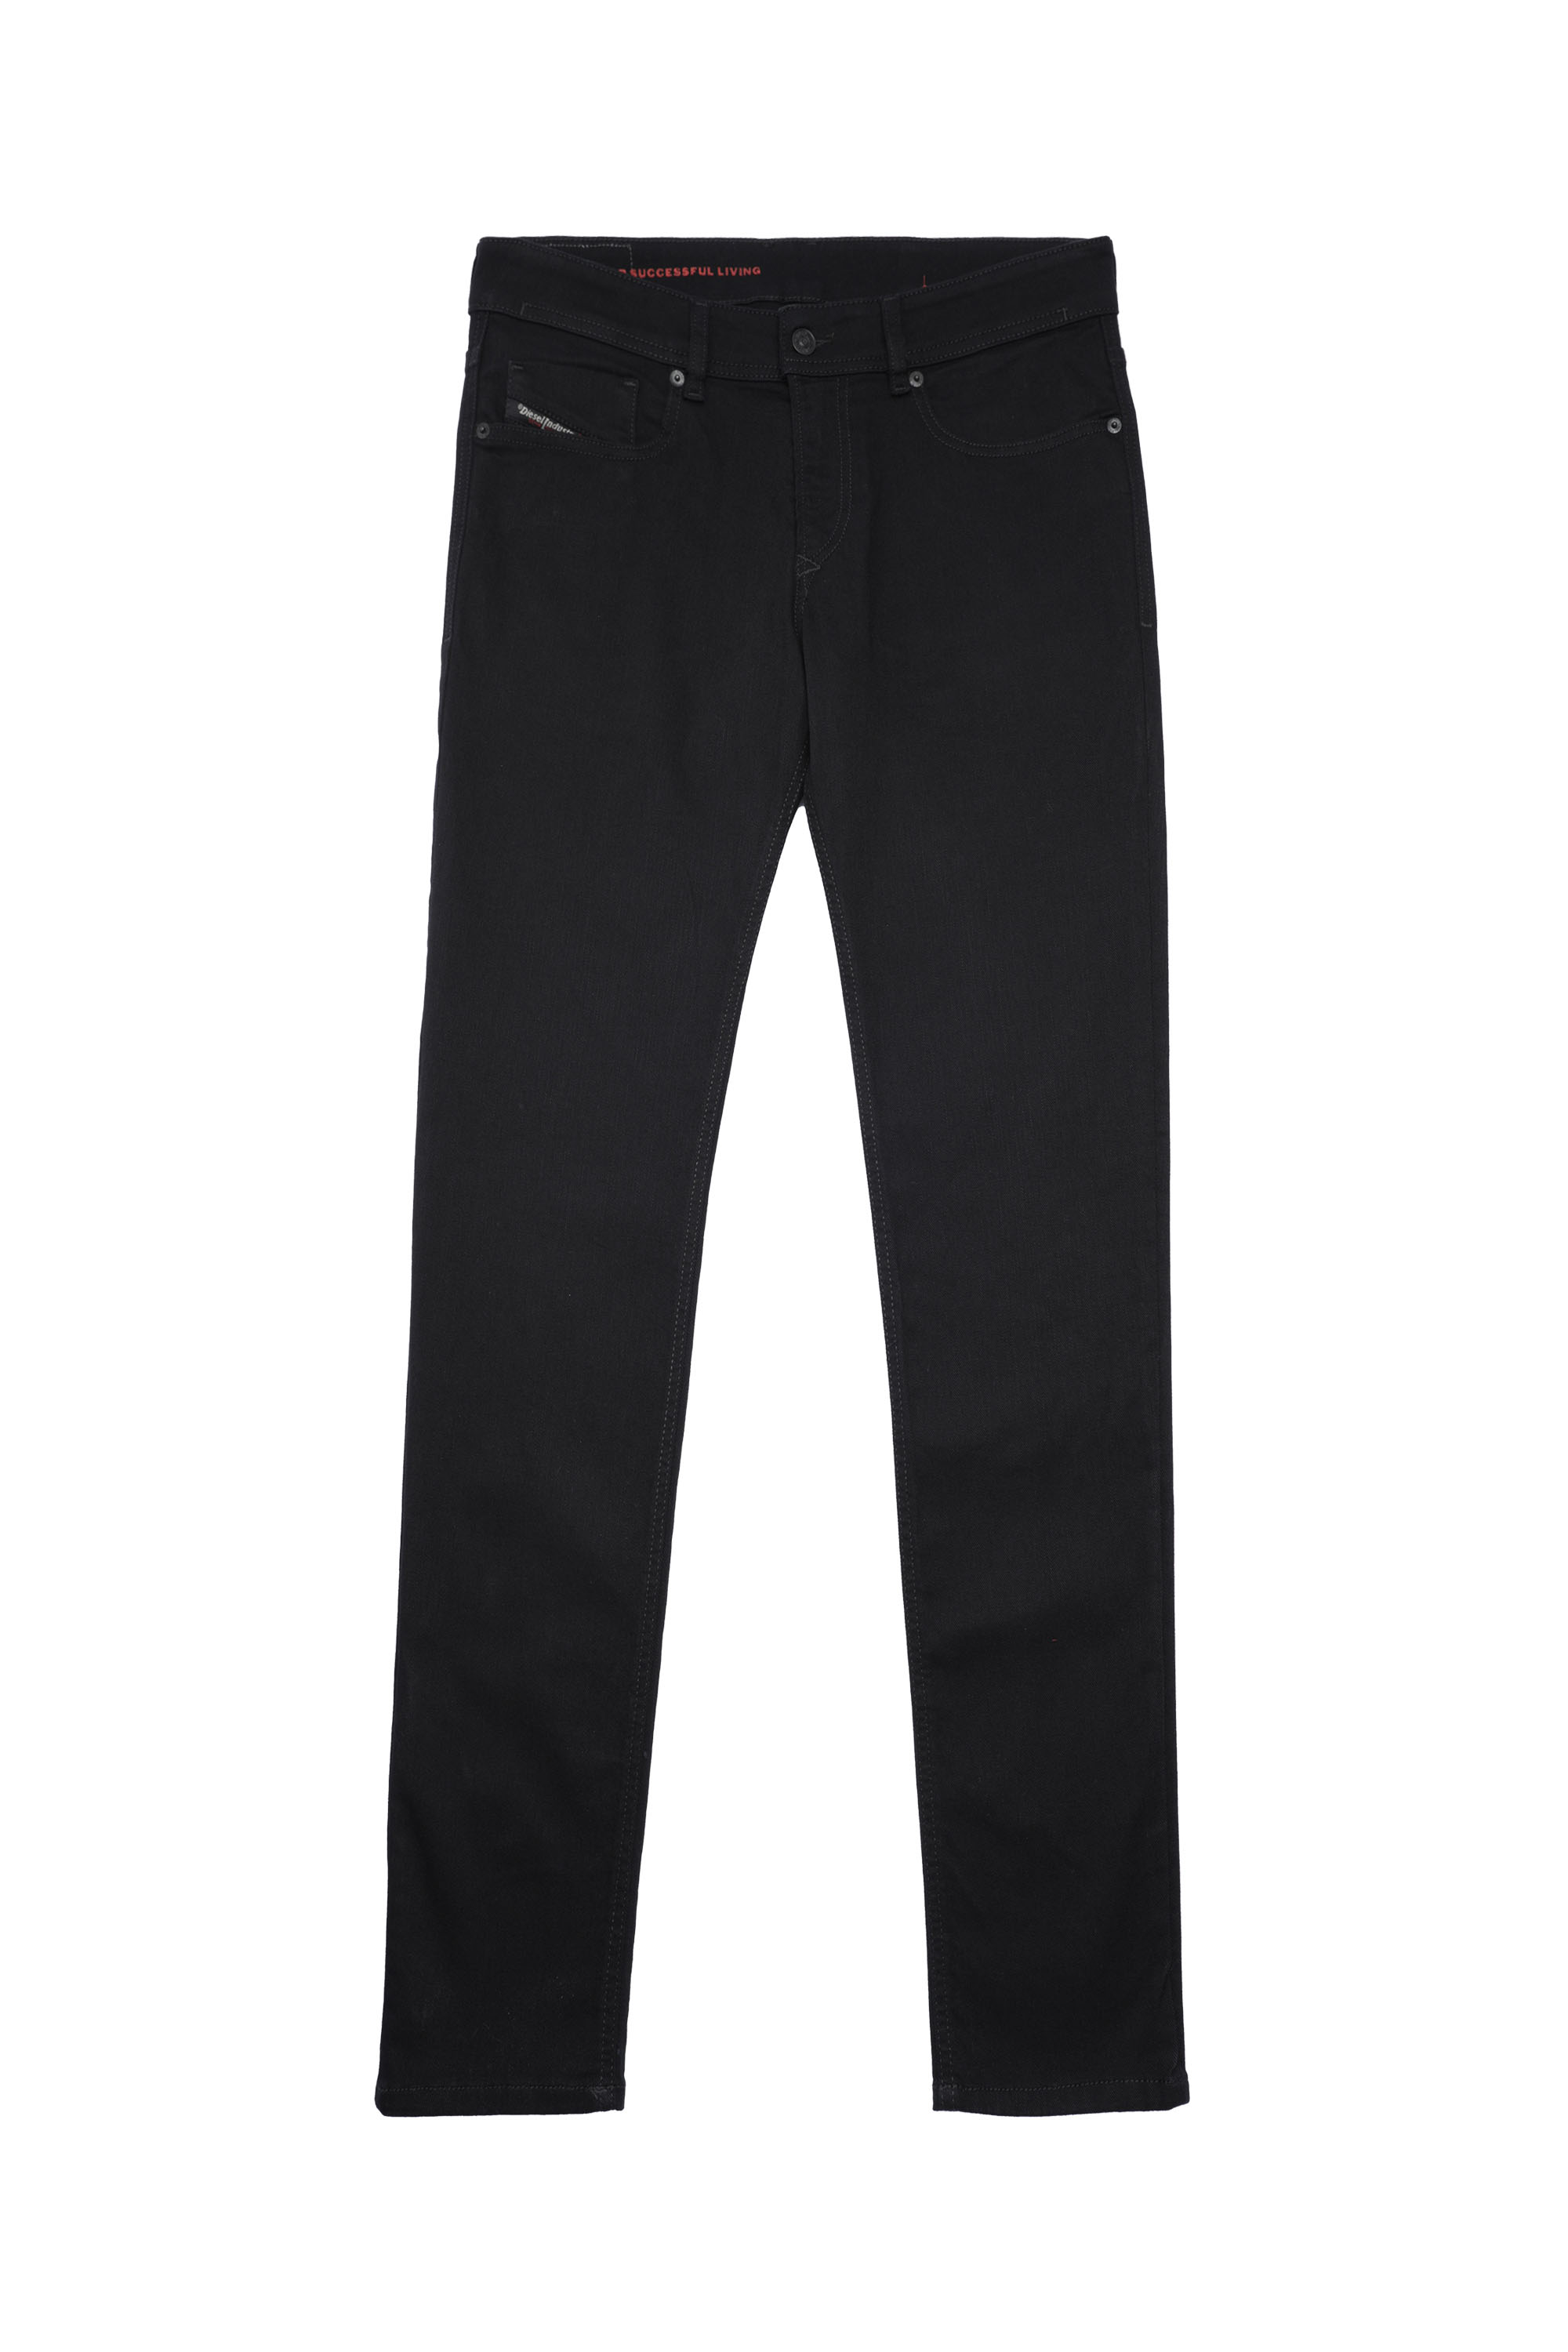 1979 Sleenker 09C51 Skinny Jeans, Black/Dark grey